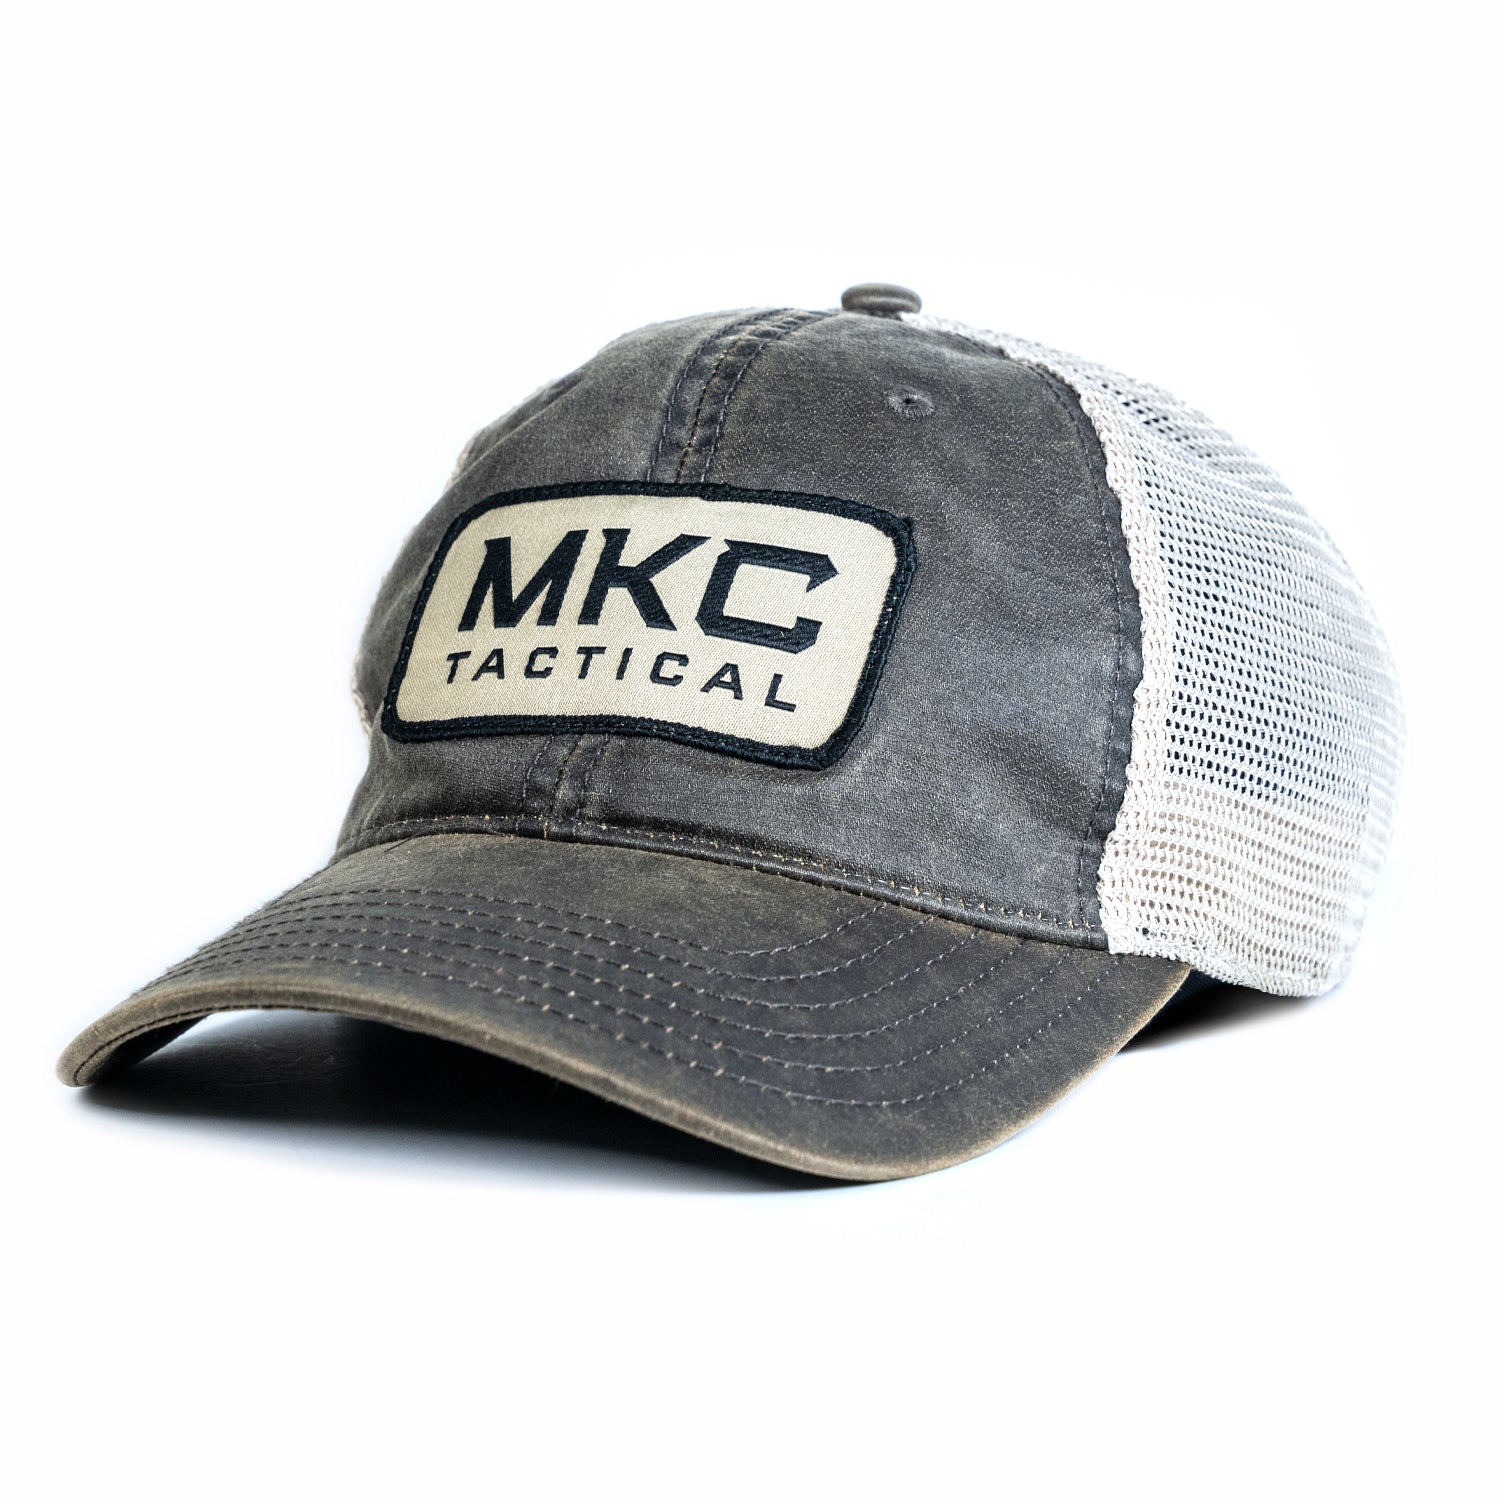 MKC TACTICAL CLASSIC TRUCKER